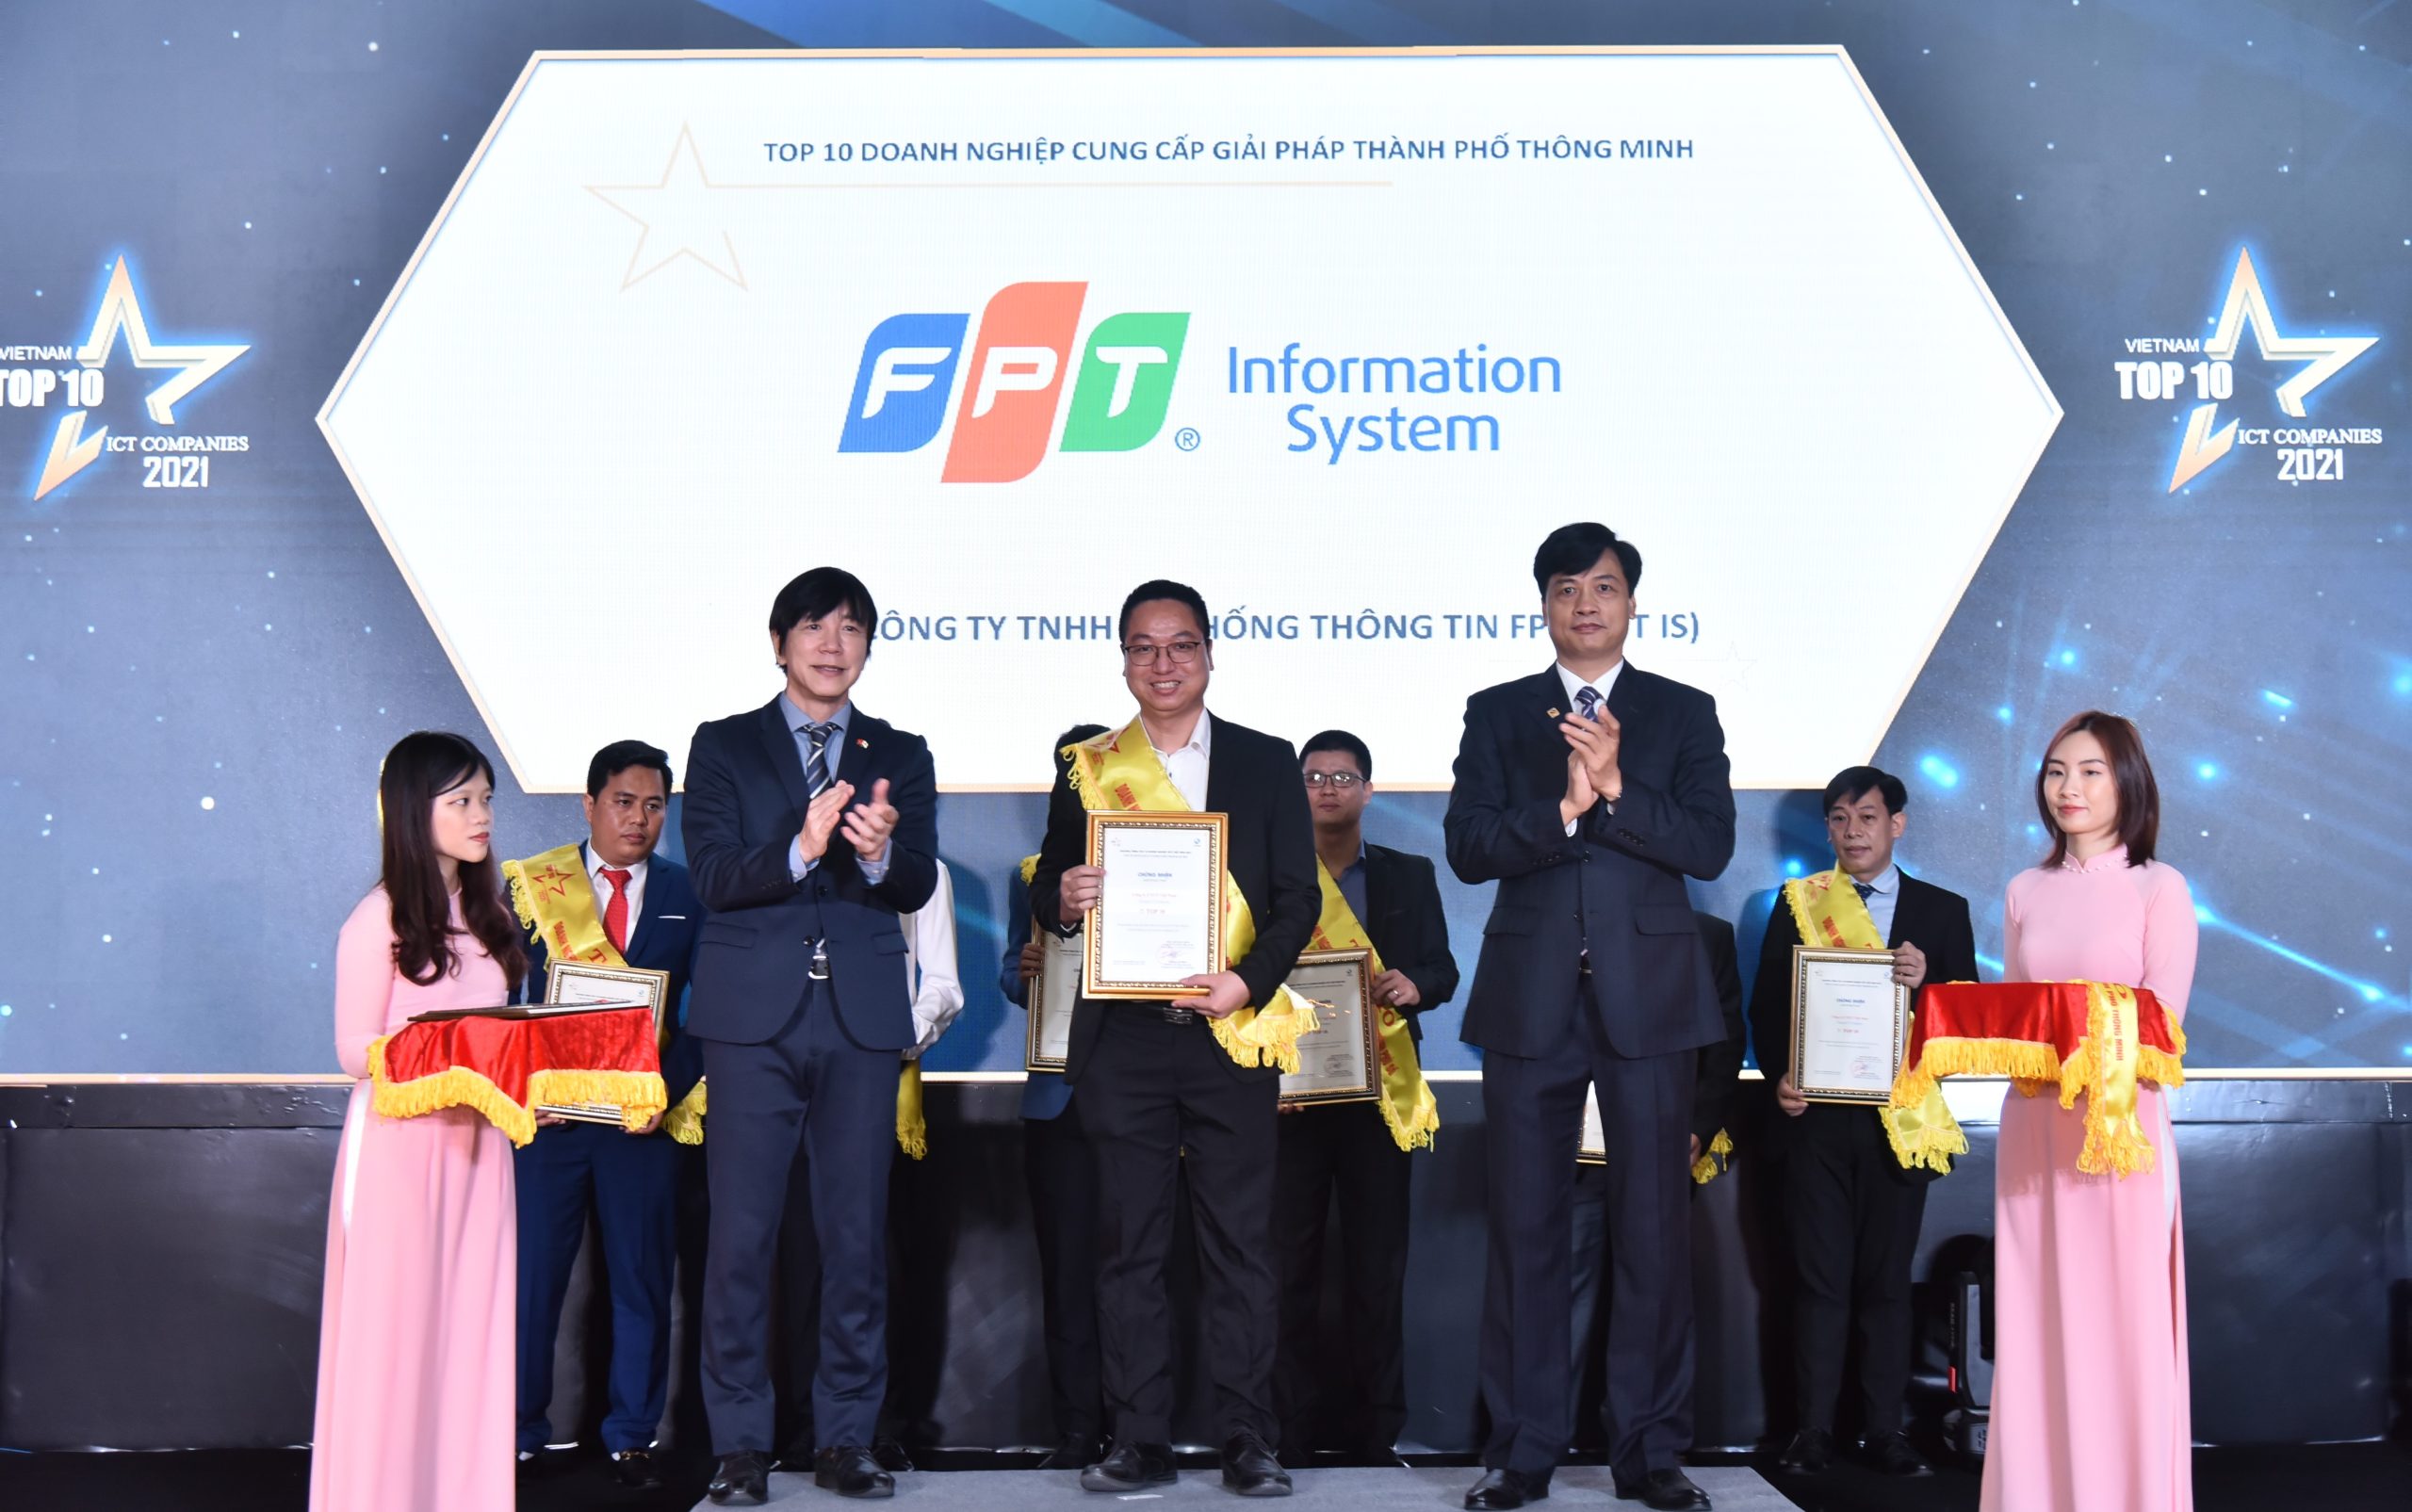 Top 10 Companies supplying Smart City Solutions in Vietnam 2021